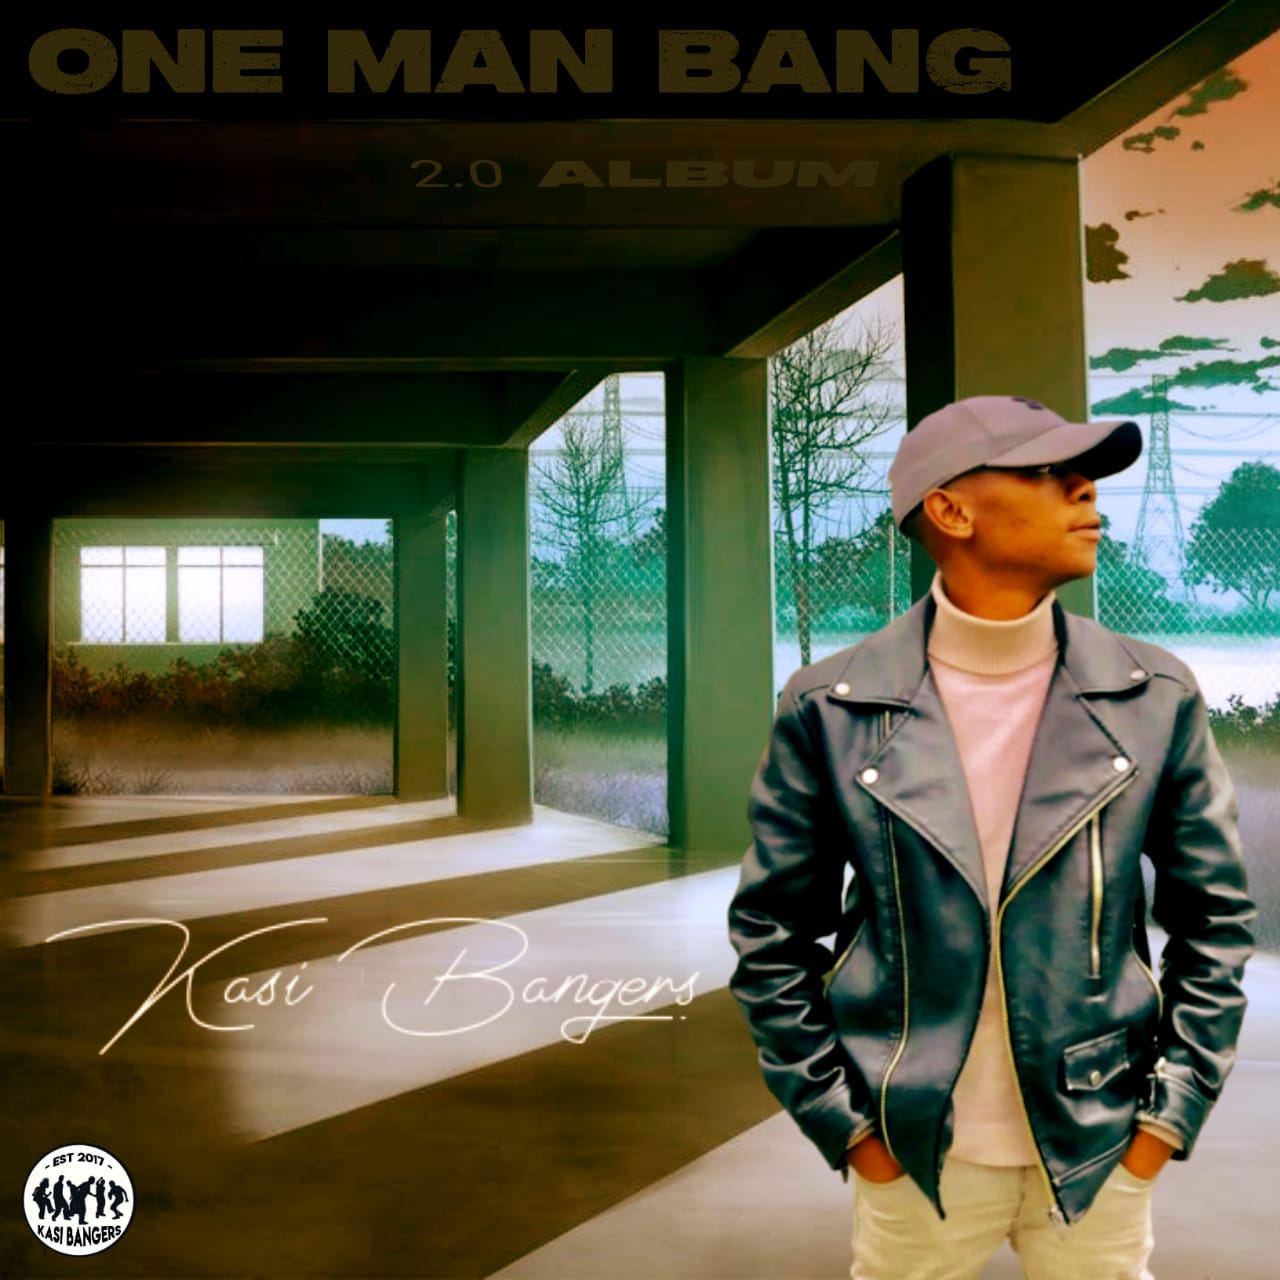 19. One Man Bang 2.0 - Kasi Bangers